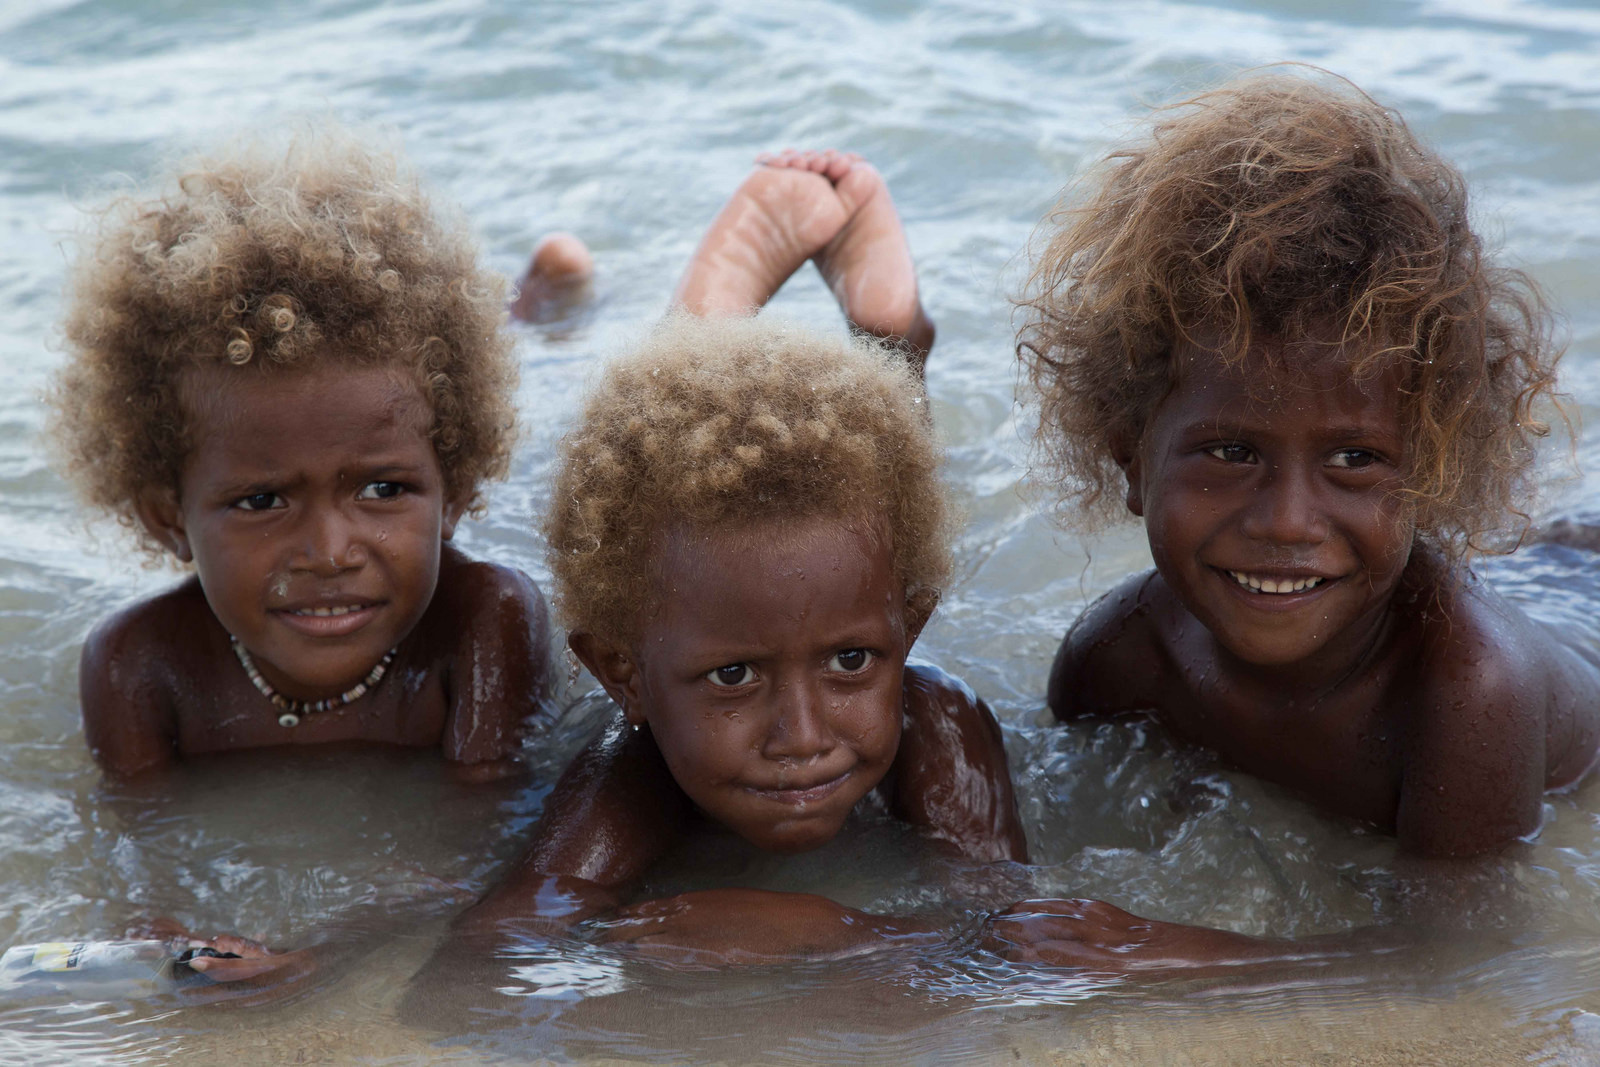 Австралия раса. Меланезийцы раса. Меланезийцы с Соломоновых островов. Меланезийская раса австралоидная. Жители Меланезии Соломоновы острова.